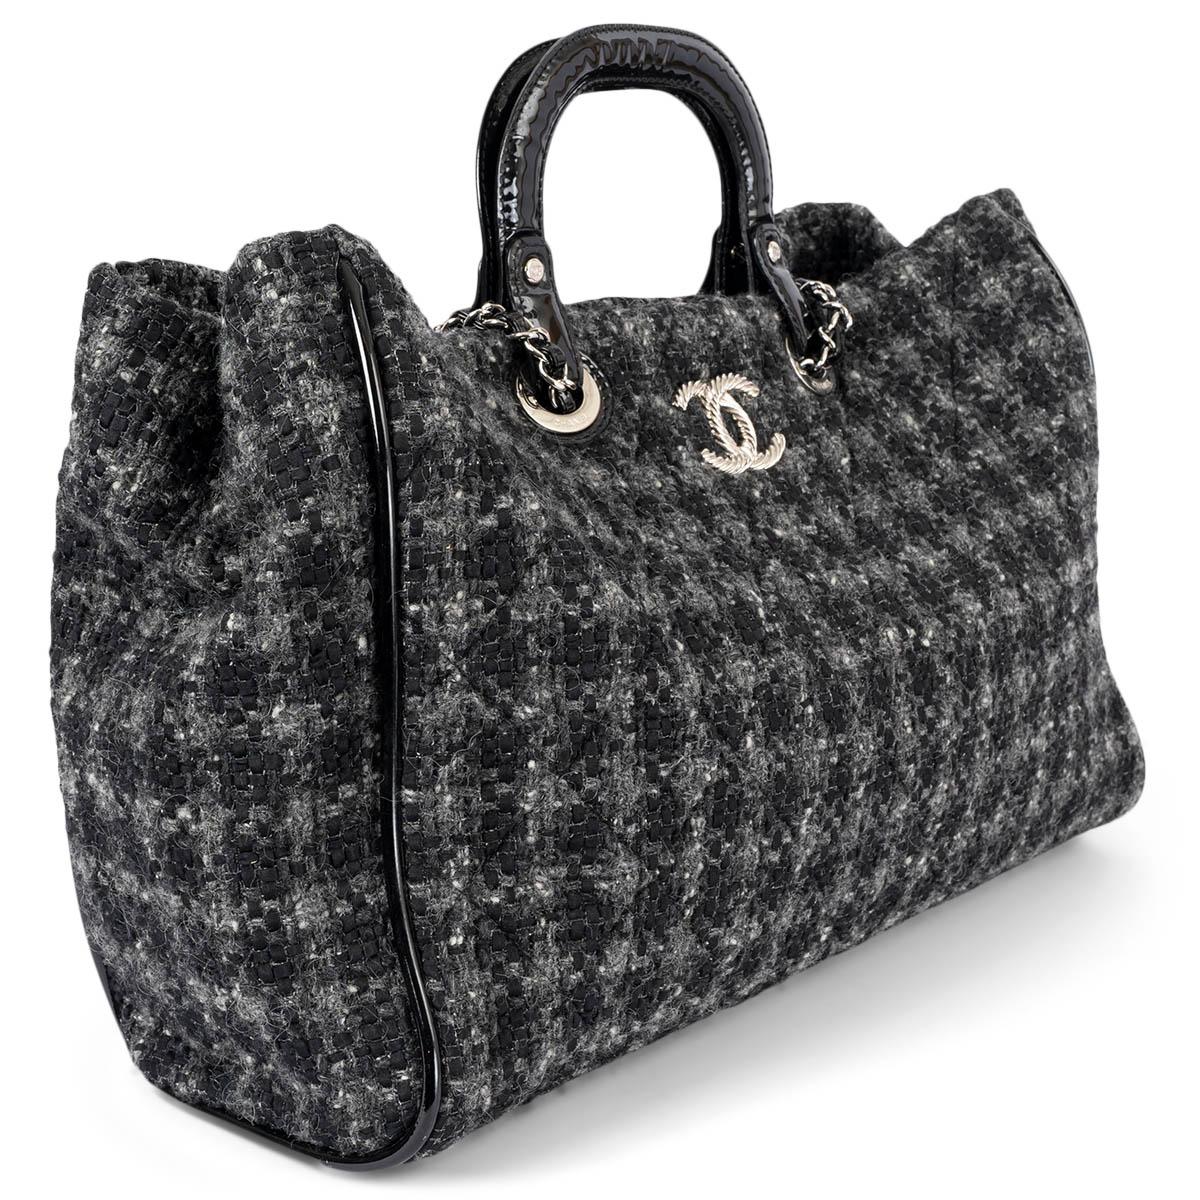 100% authentique Chanel shopper en tweed matelassé noir et gris avec poignées en cuir verni noir et bandoulière en chaîne. Le modèle s'ouvre par un bouton magnétique sur le dessus et est doublé de toile noire avec une grande poche zippée au dos et